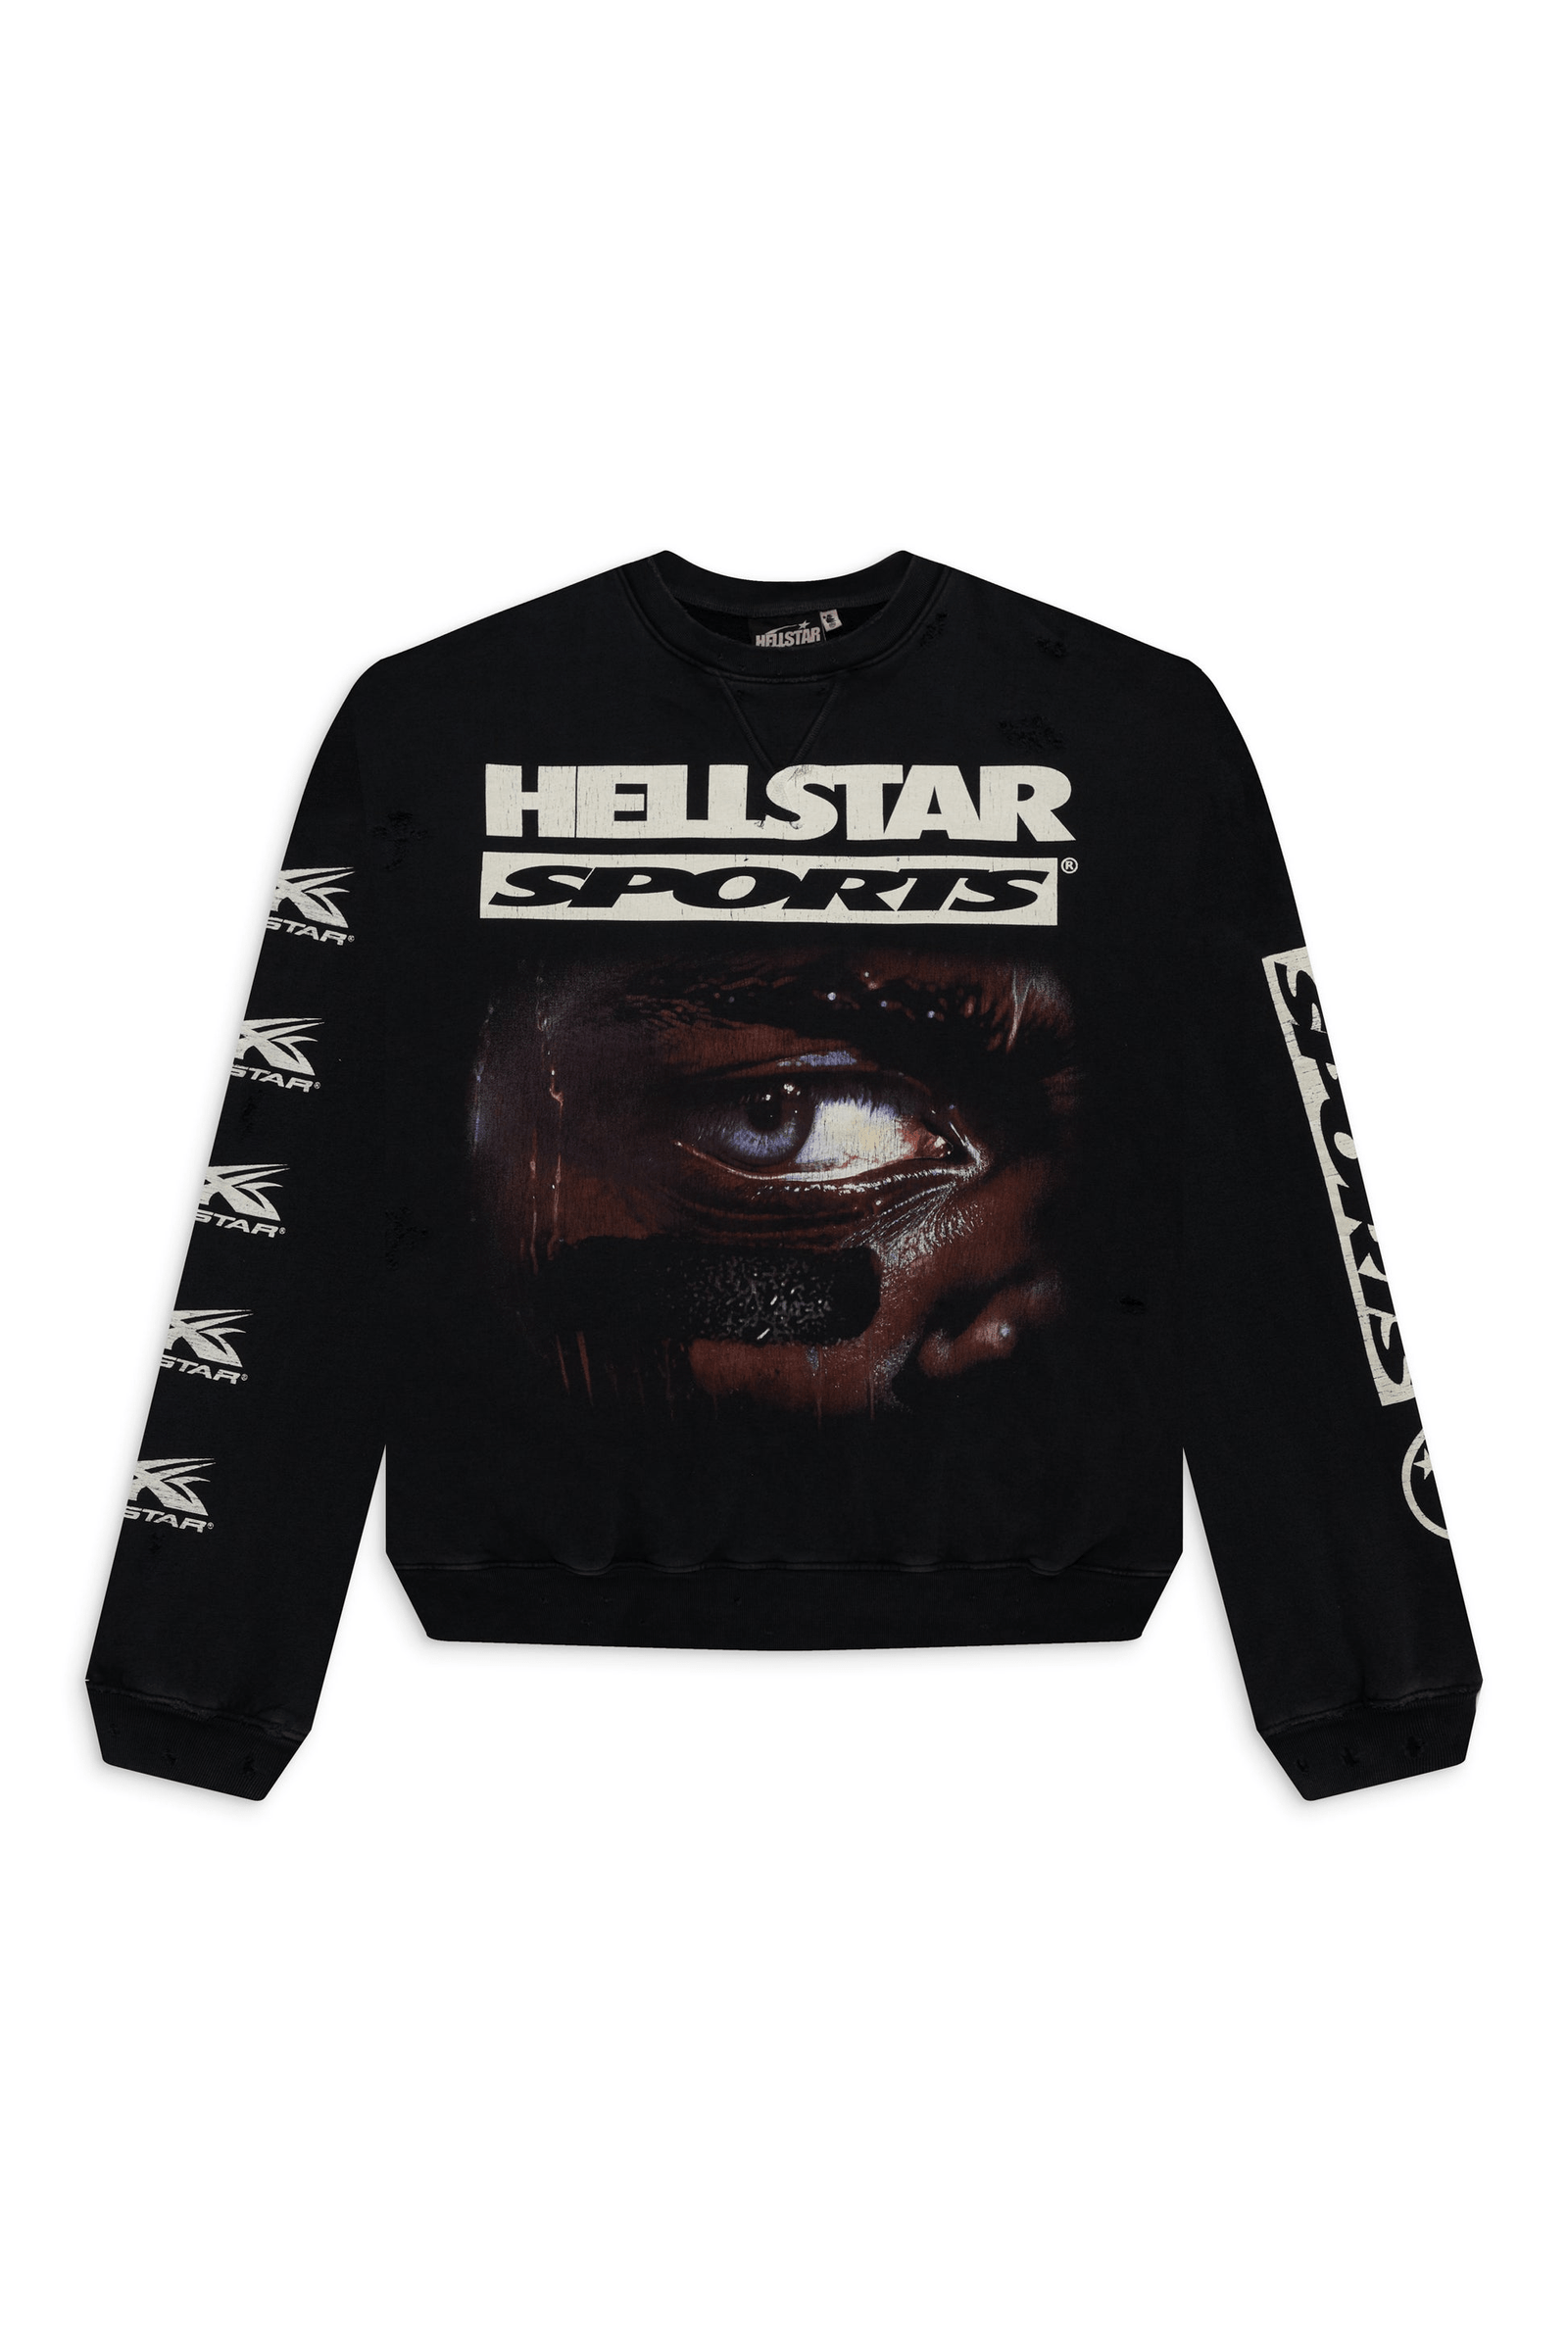 Hellstar Sports 96' Crewneck Black